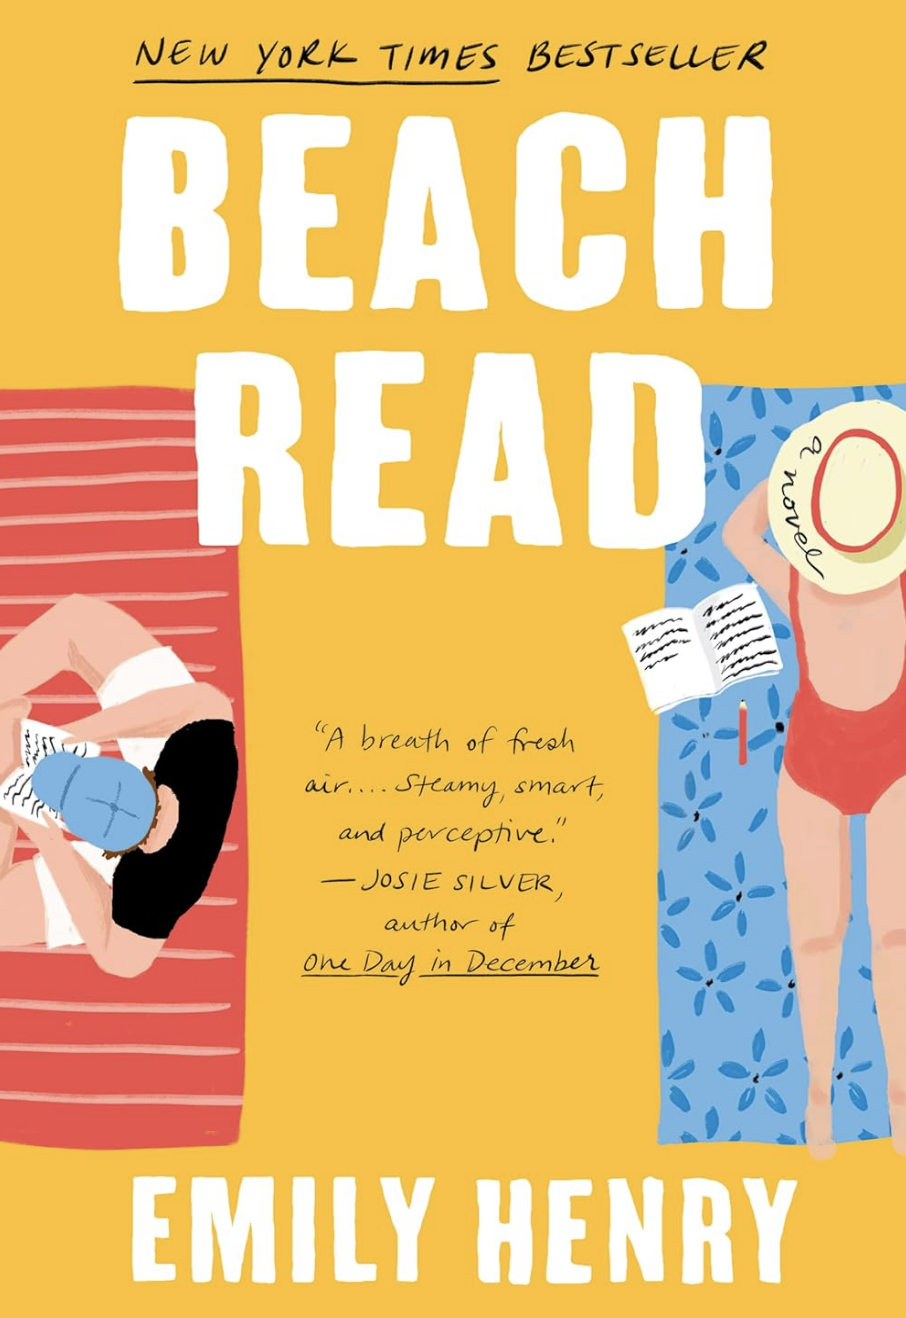 Book cover: "Beach Read."